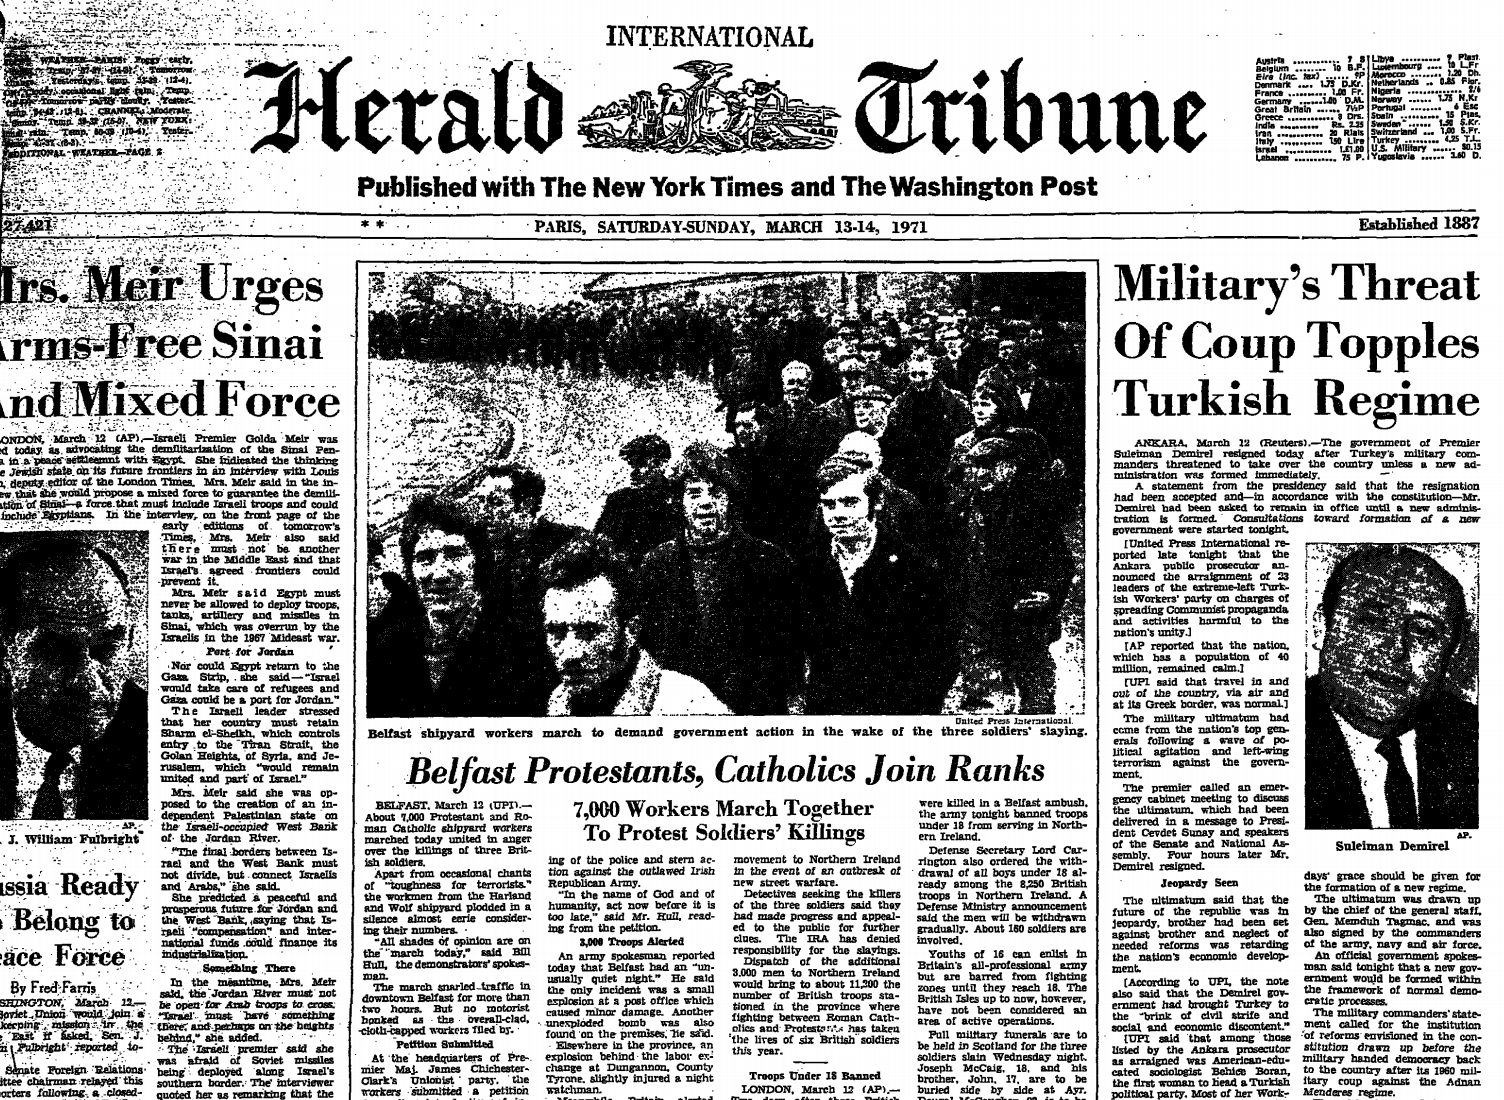 Herald Tribune 1971 coup